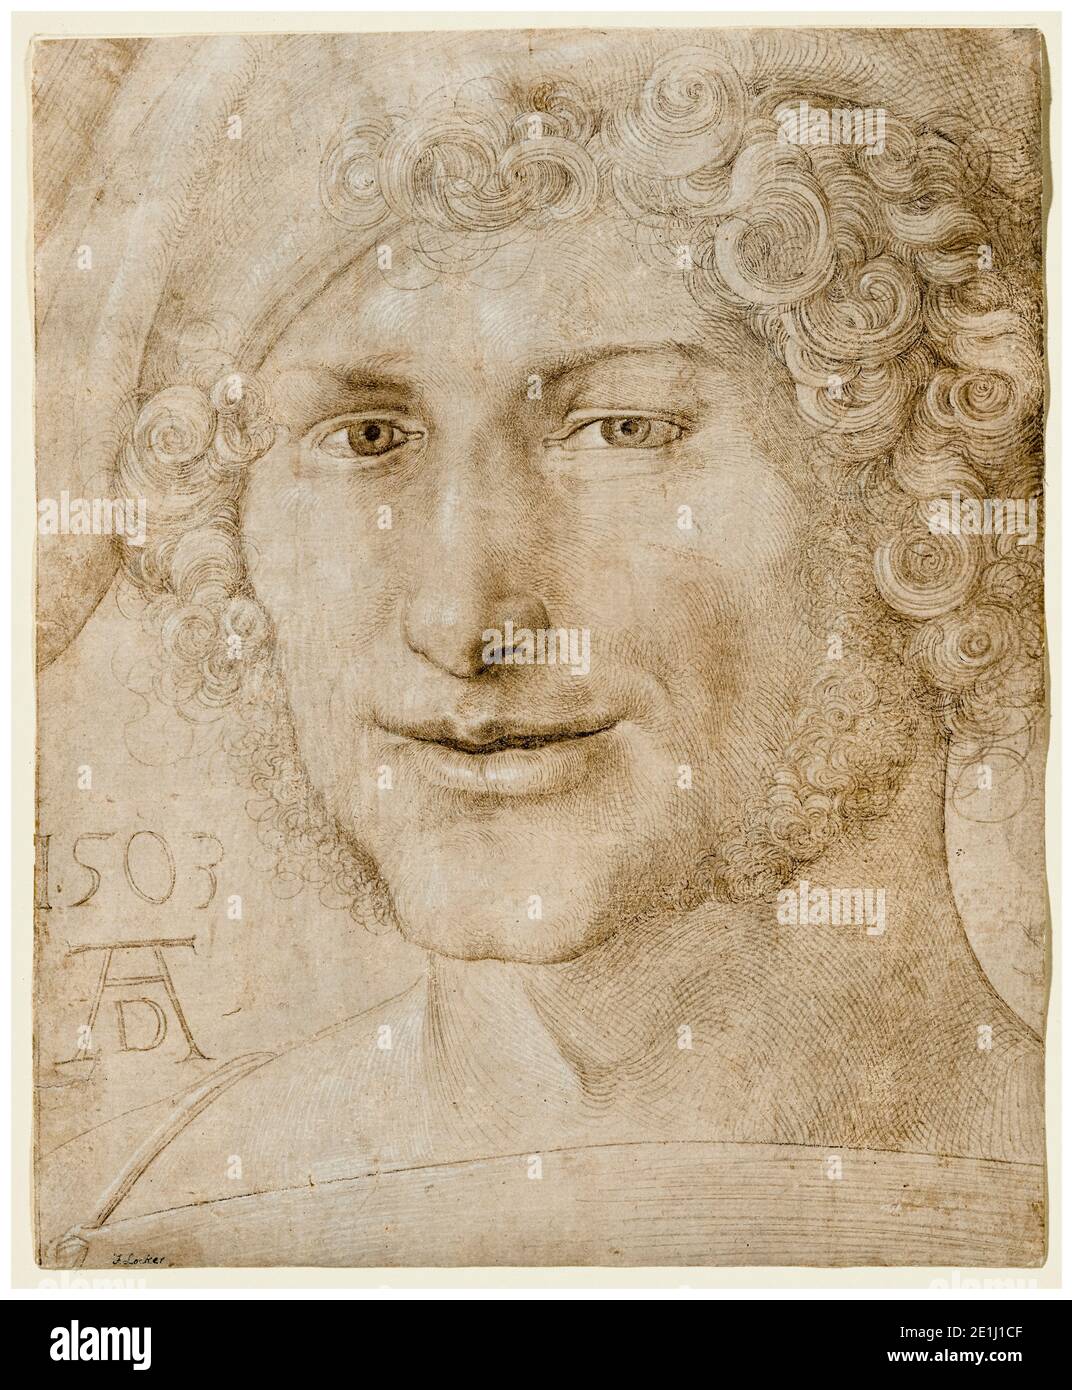 Albrecht Dürer, Head of a Young Man, drawing, 1503 Stock Photo